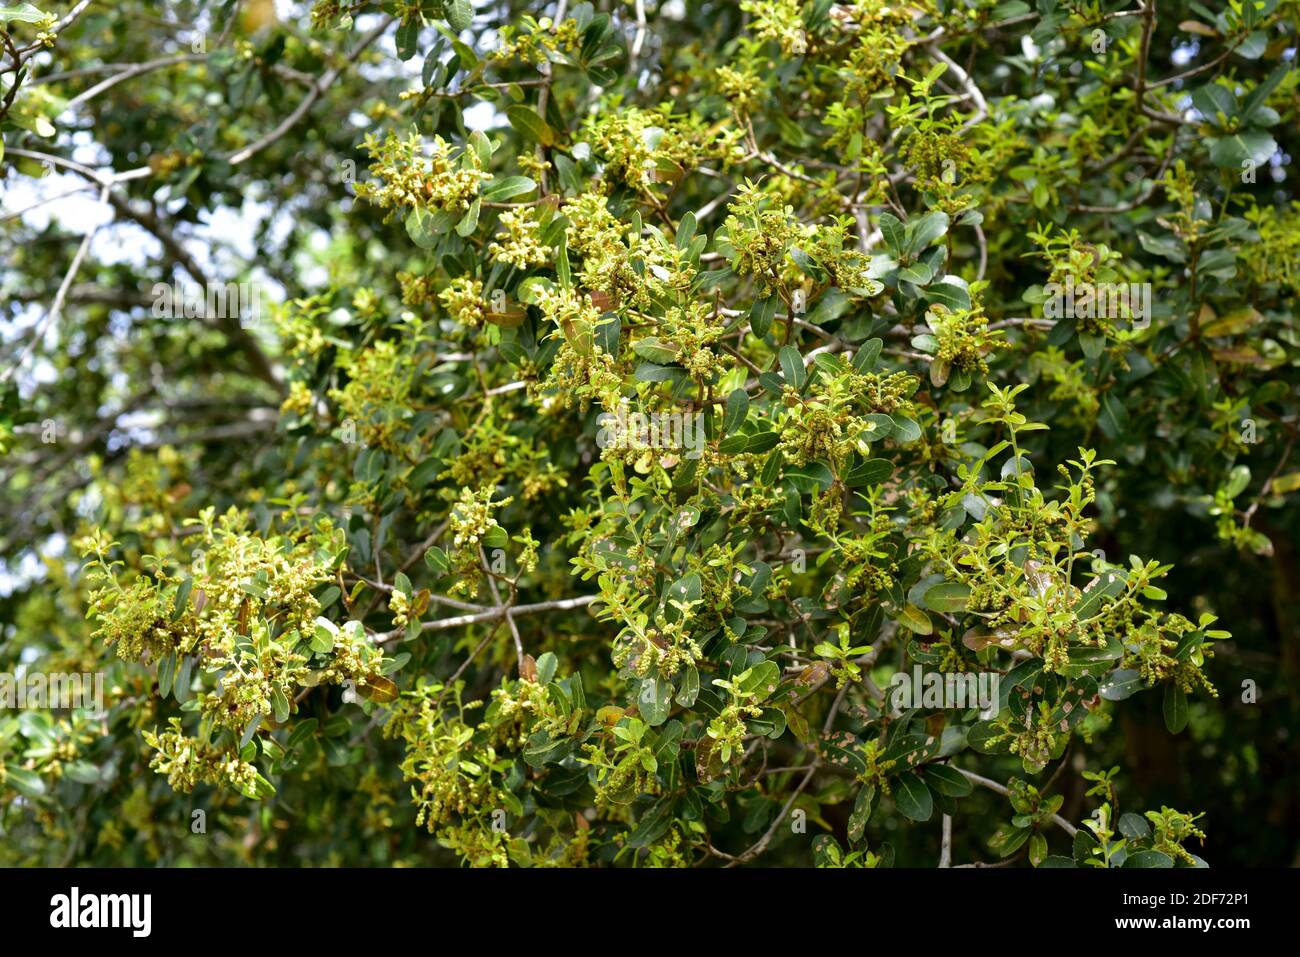 La quercia palestinese (Quercus calliprinos) è un piccolo albero sempreverde originario della regione del Mediterraneo orientale. Fiori e foglie dettaglio. Foto Stock